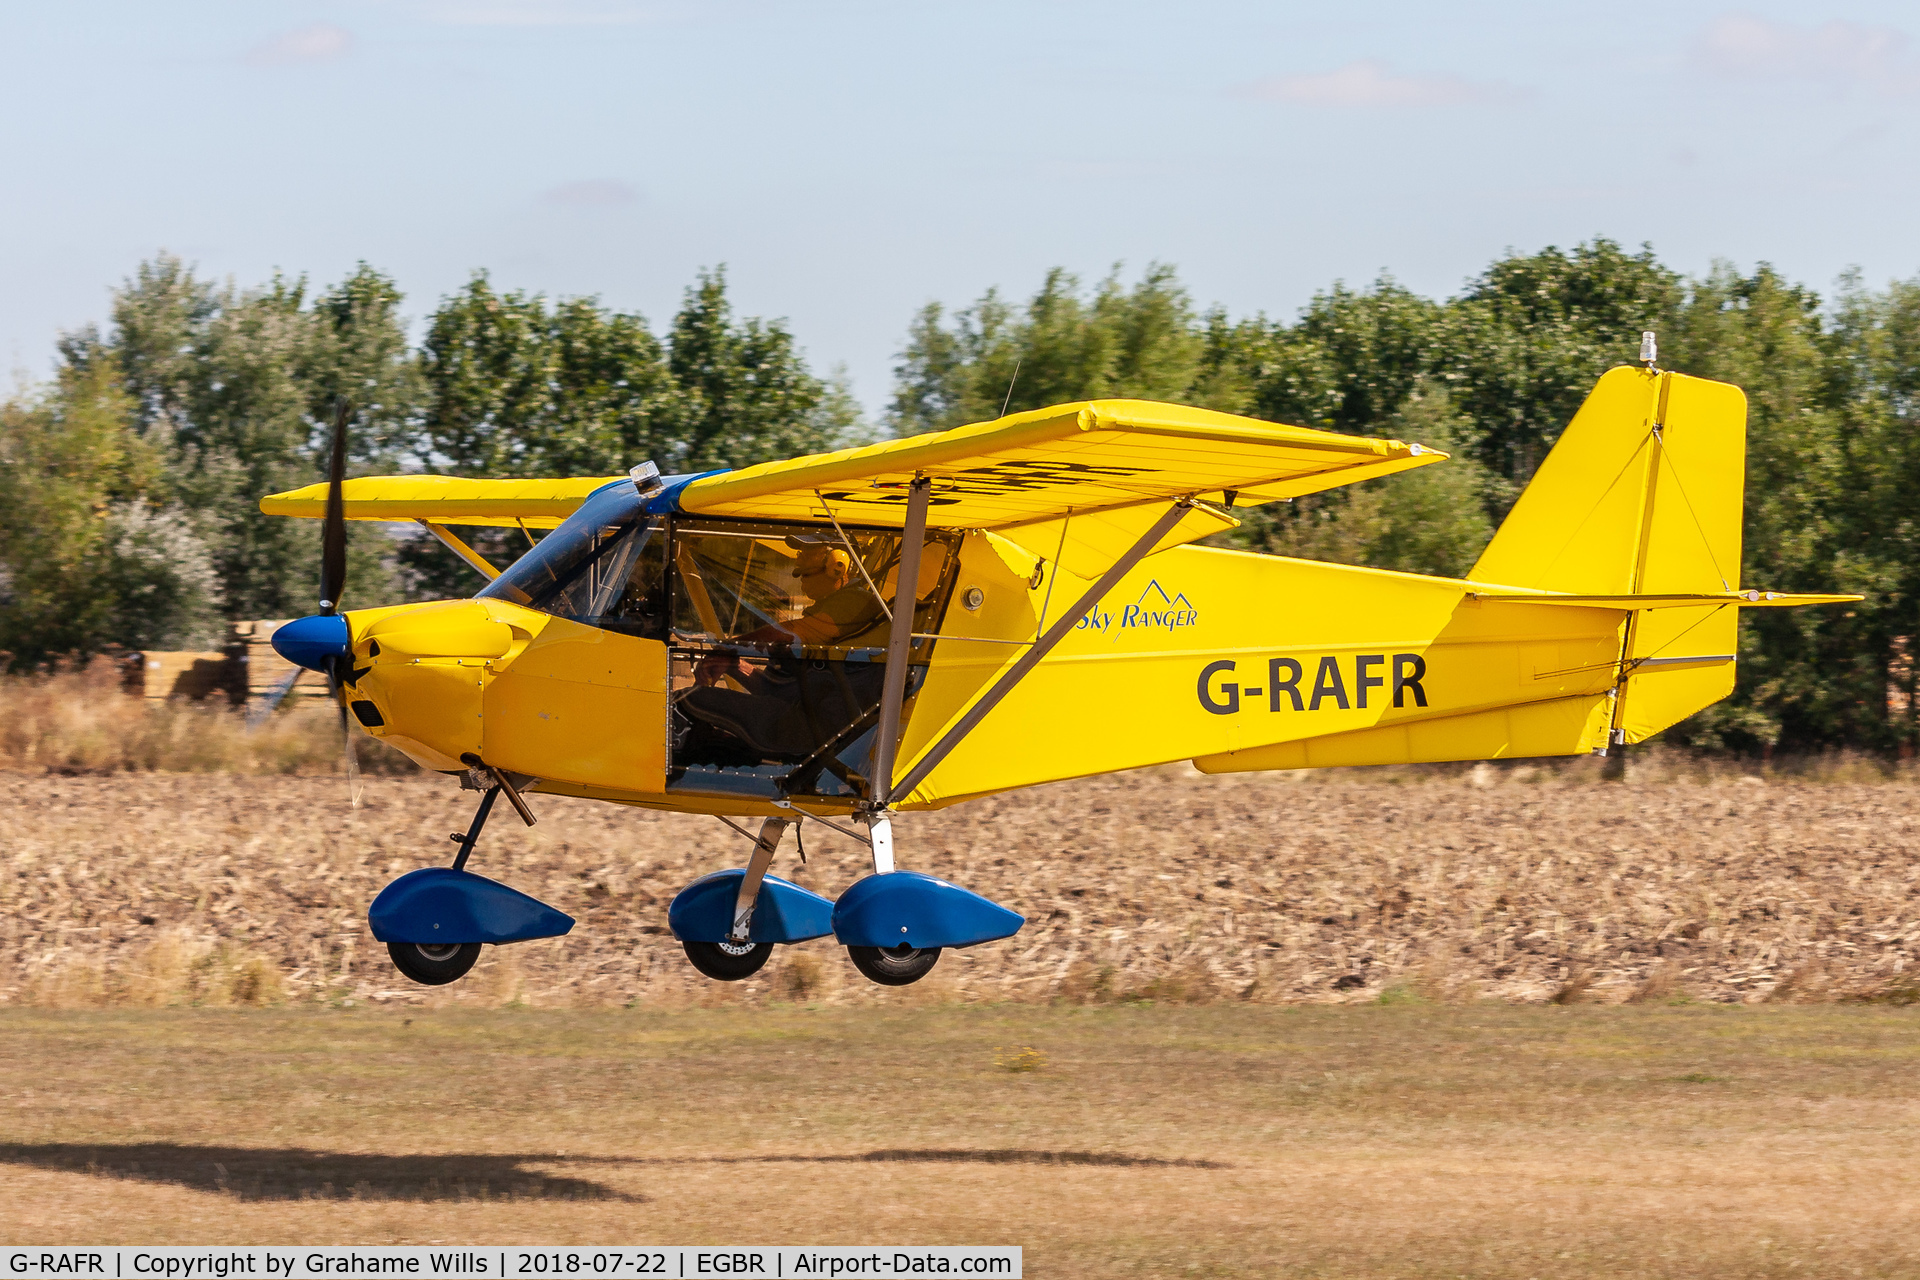 G-RAFR, 2004 Skyranger J2.2(1) C/N BMAA/HB/410, Best Off Skyranger 912S(1) G-RAFR, Breighton 22/7/18